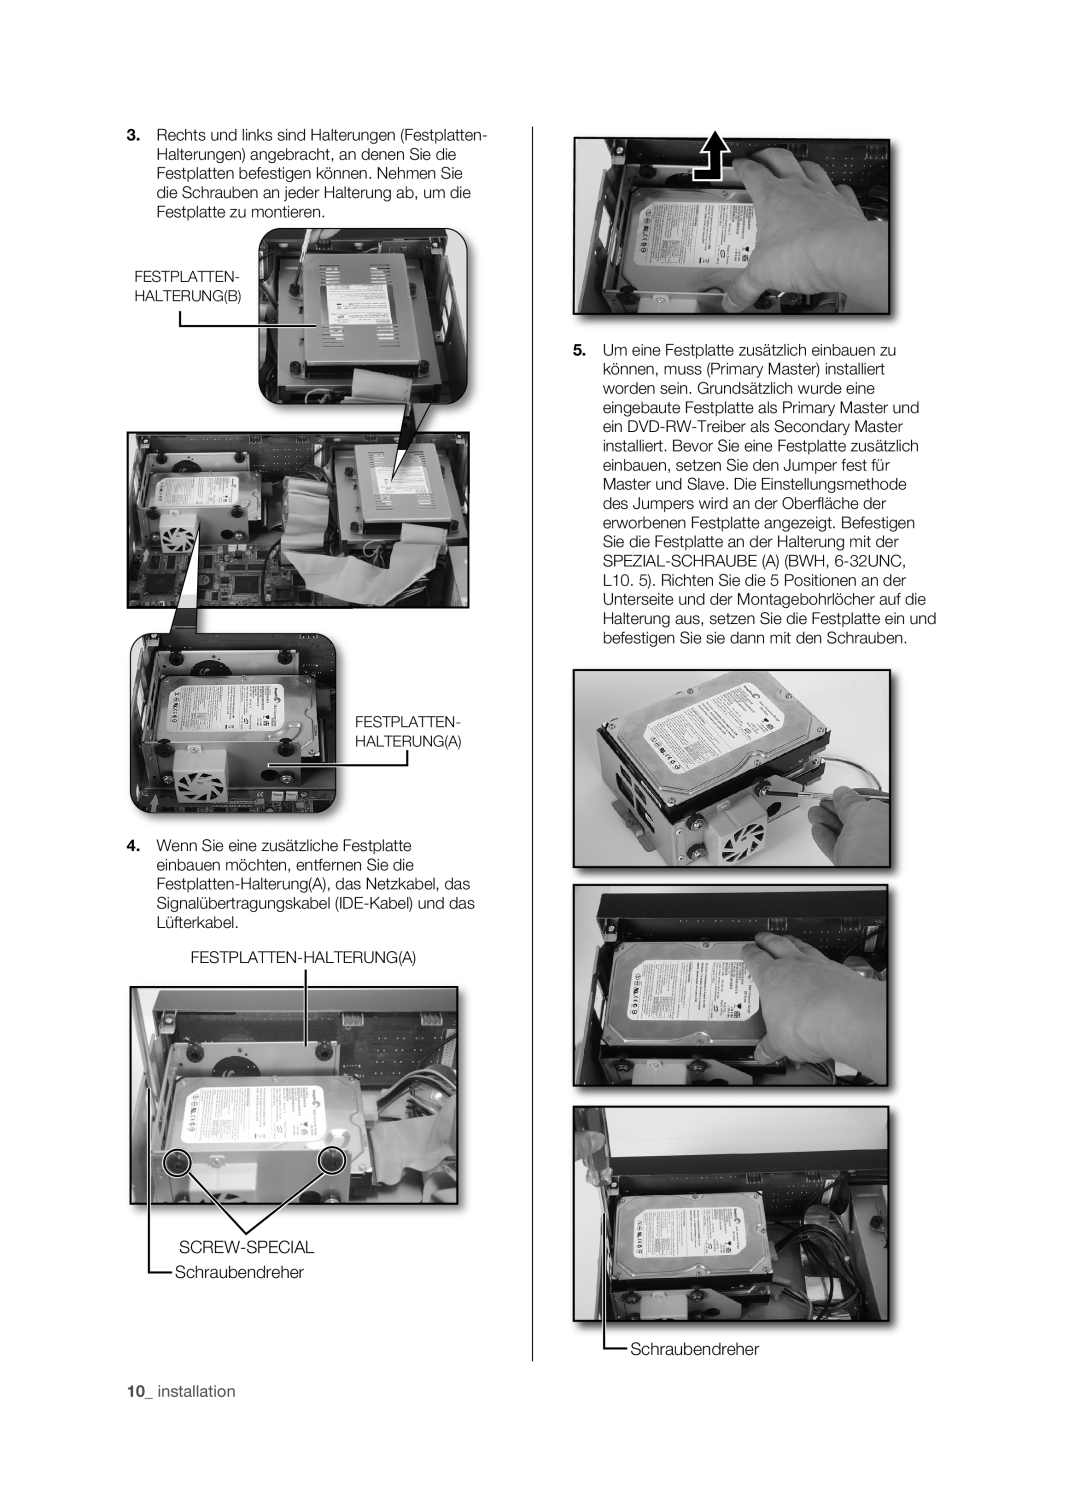 Samsung SHR-5162P/XEG, SHR-5082P/XEG, SHR-5160P, SHR-5080P manual SCREW-SPECIAL Schraubendreher, installation 